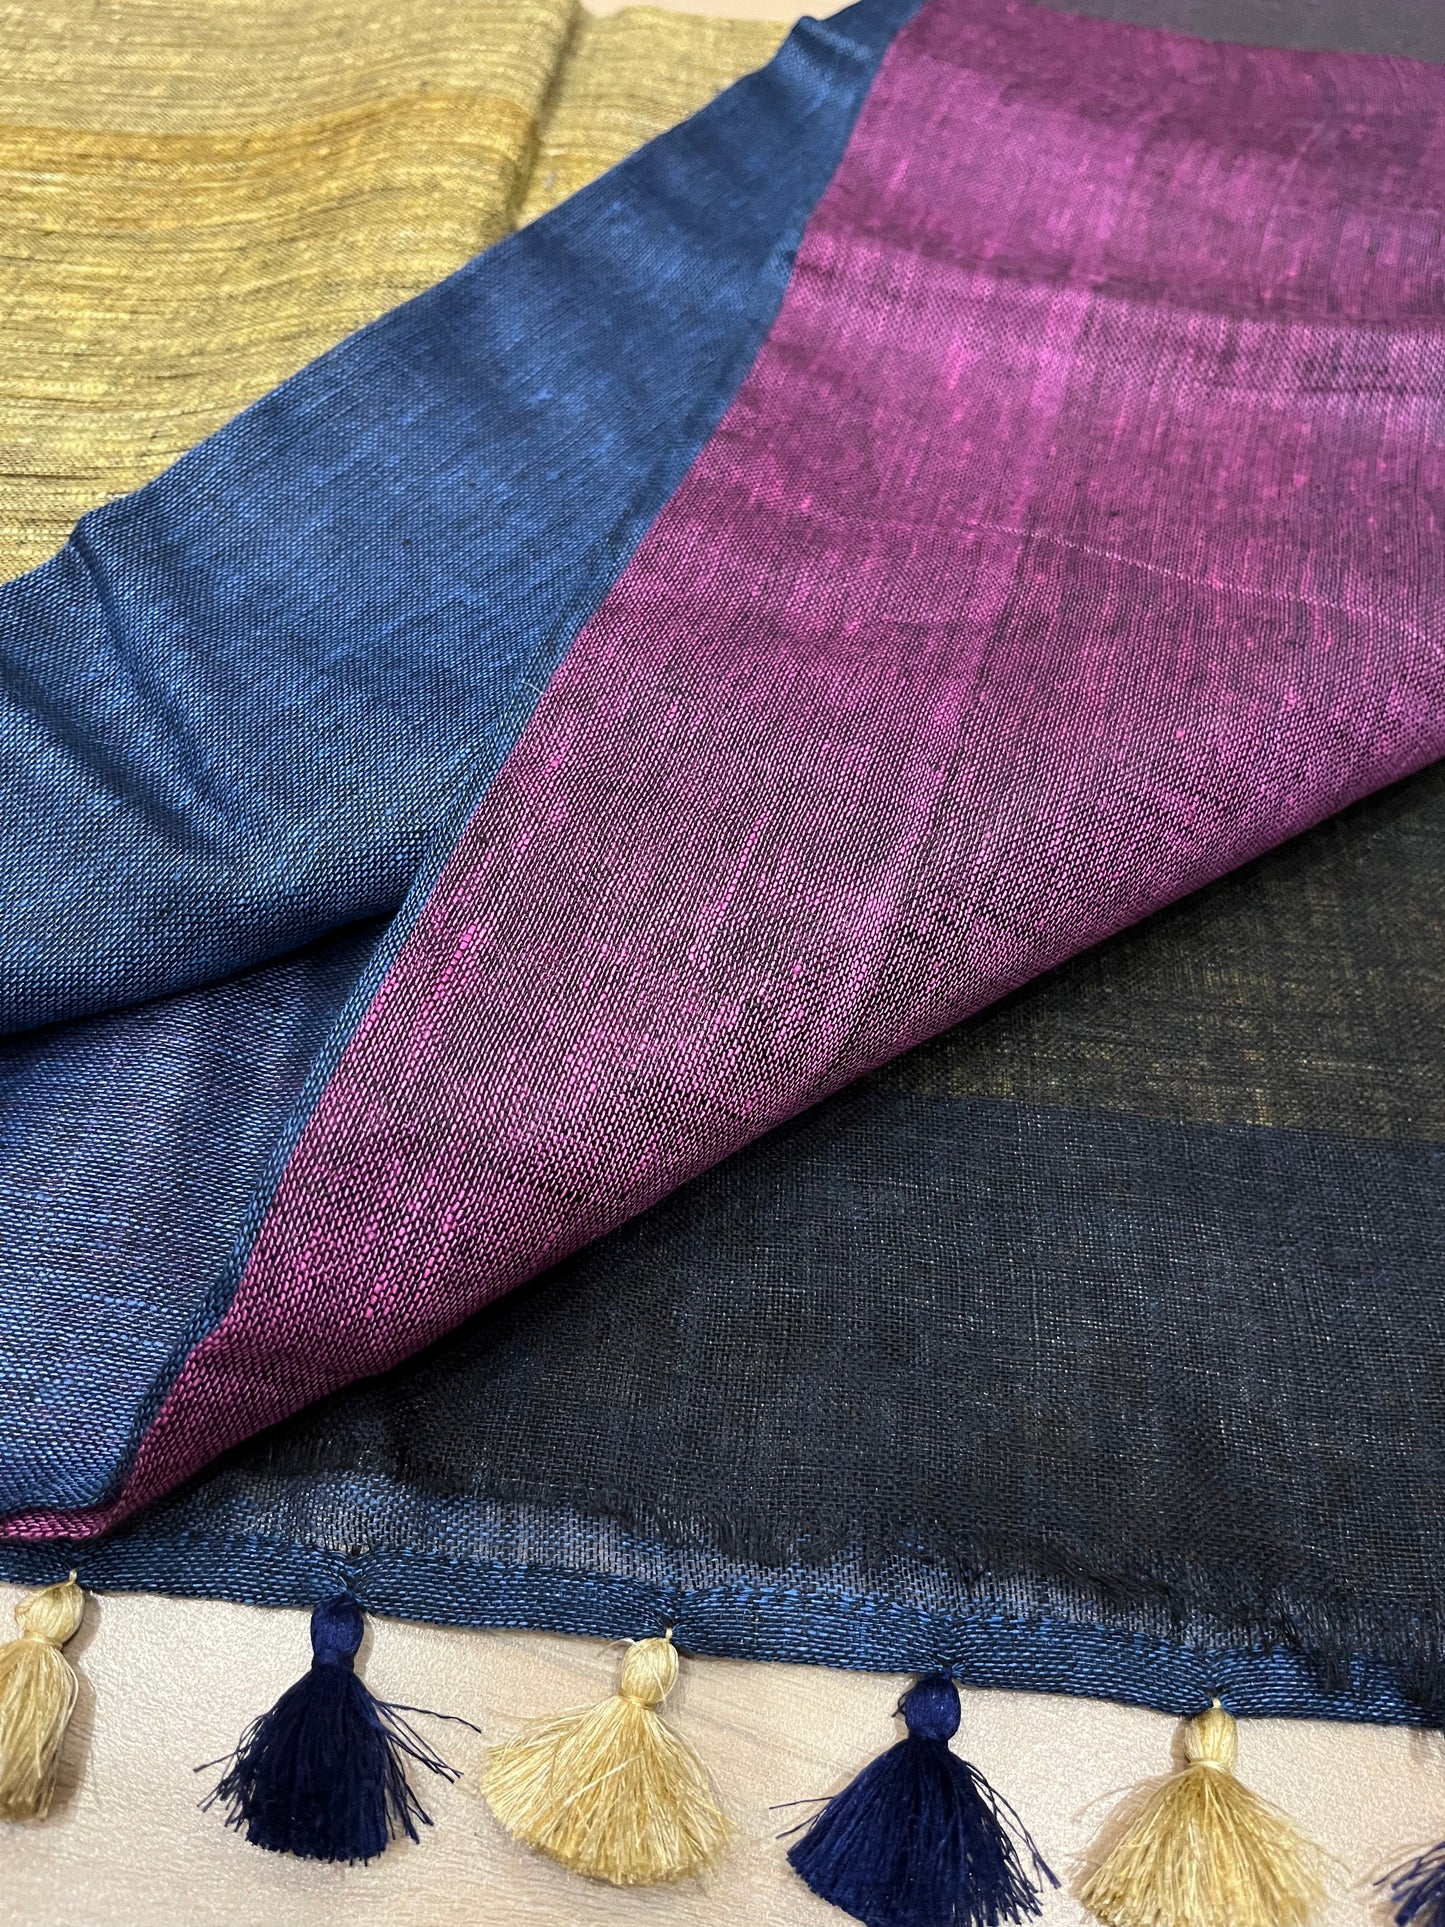 Dual shade half and half Handwoven organic Linen Saree | Contrast blouse | KIHUMS Saree